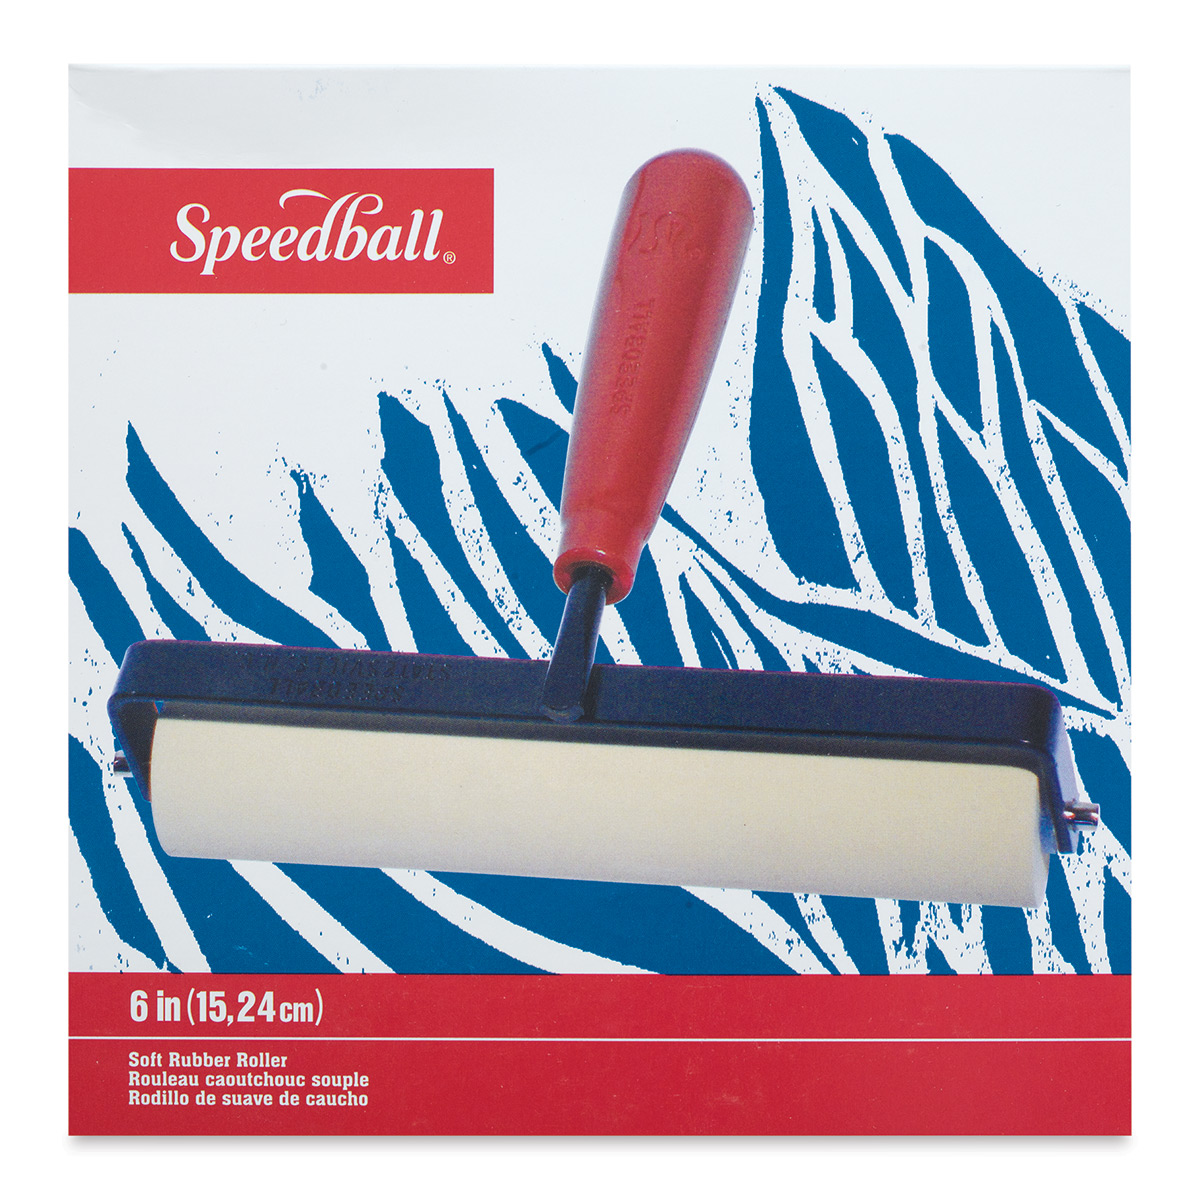 Speedball® Deluxe Soft Rubber Brayer